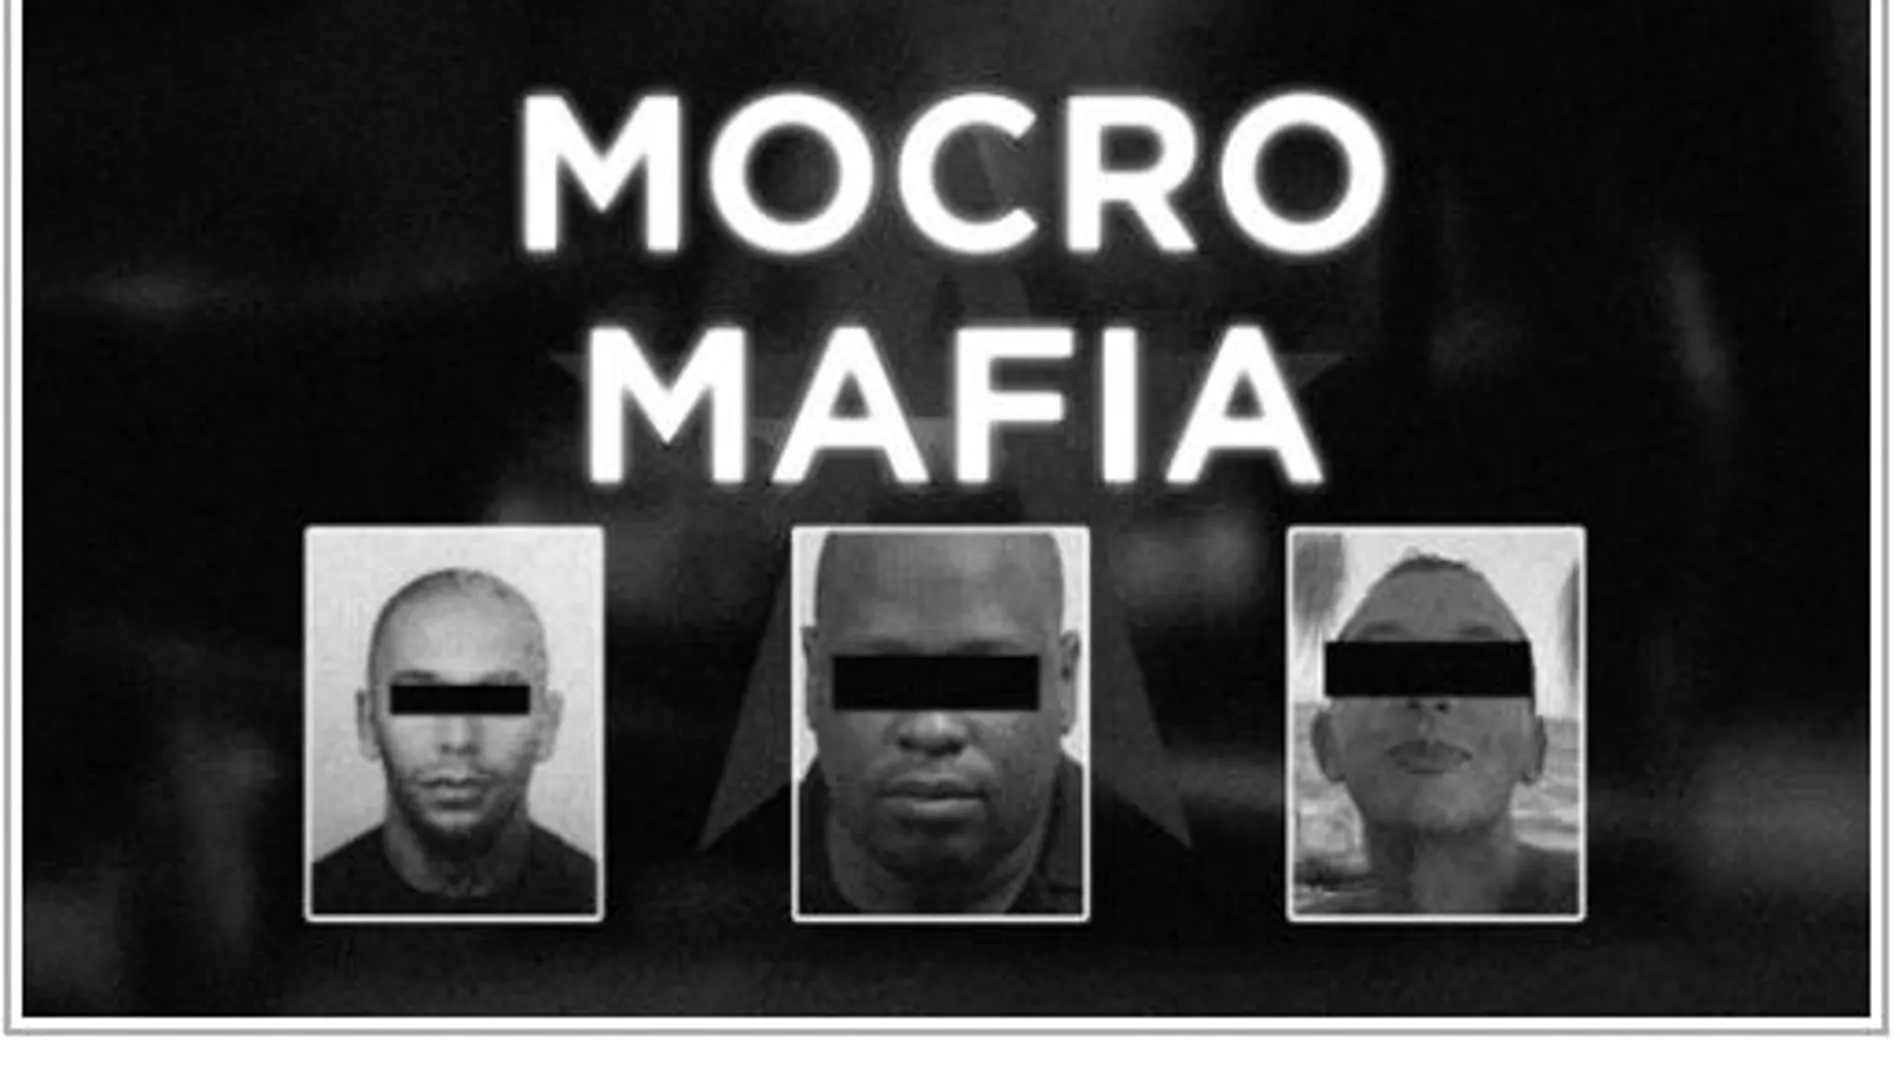 Miembros de la mafia marroquí (Nador City)